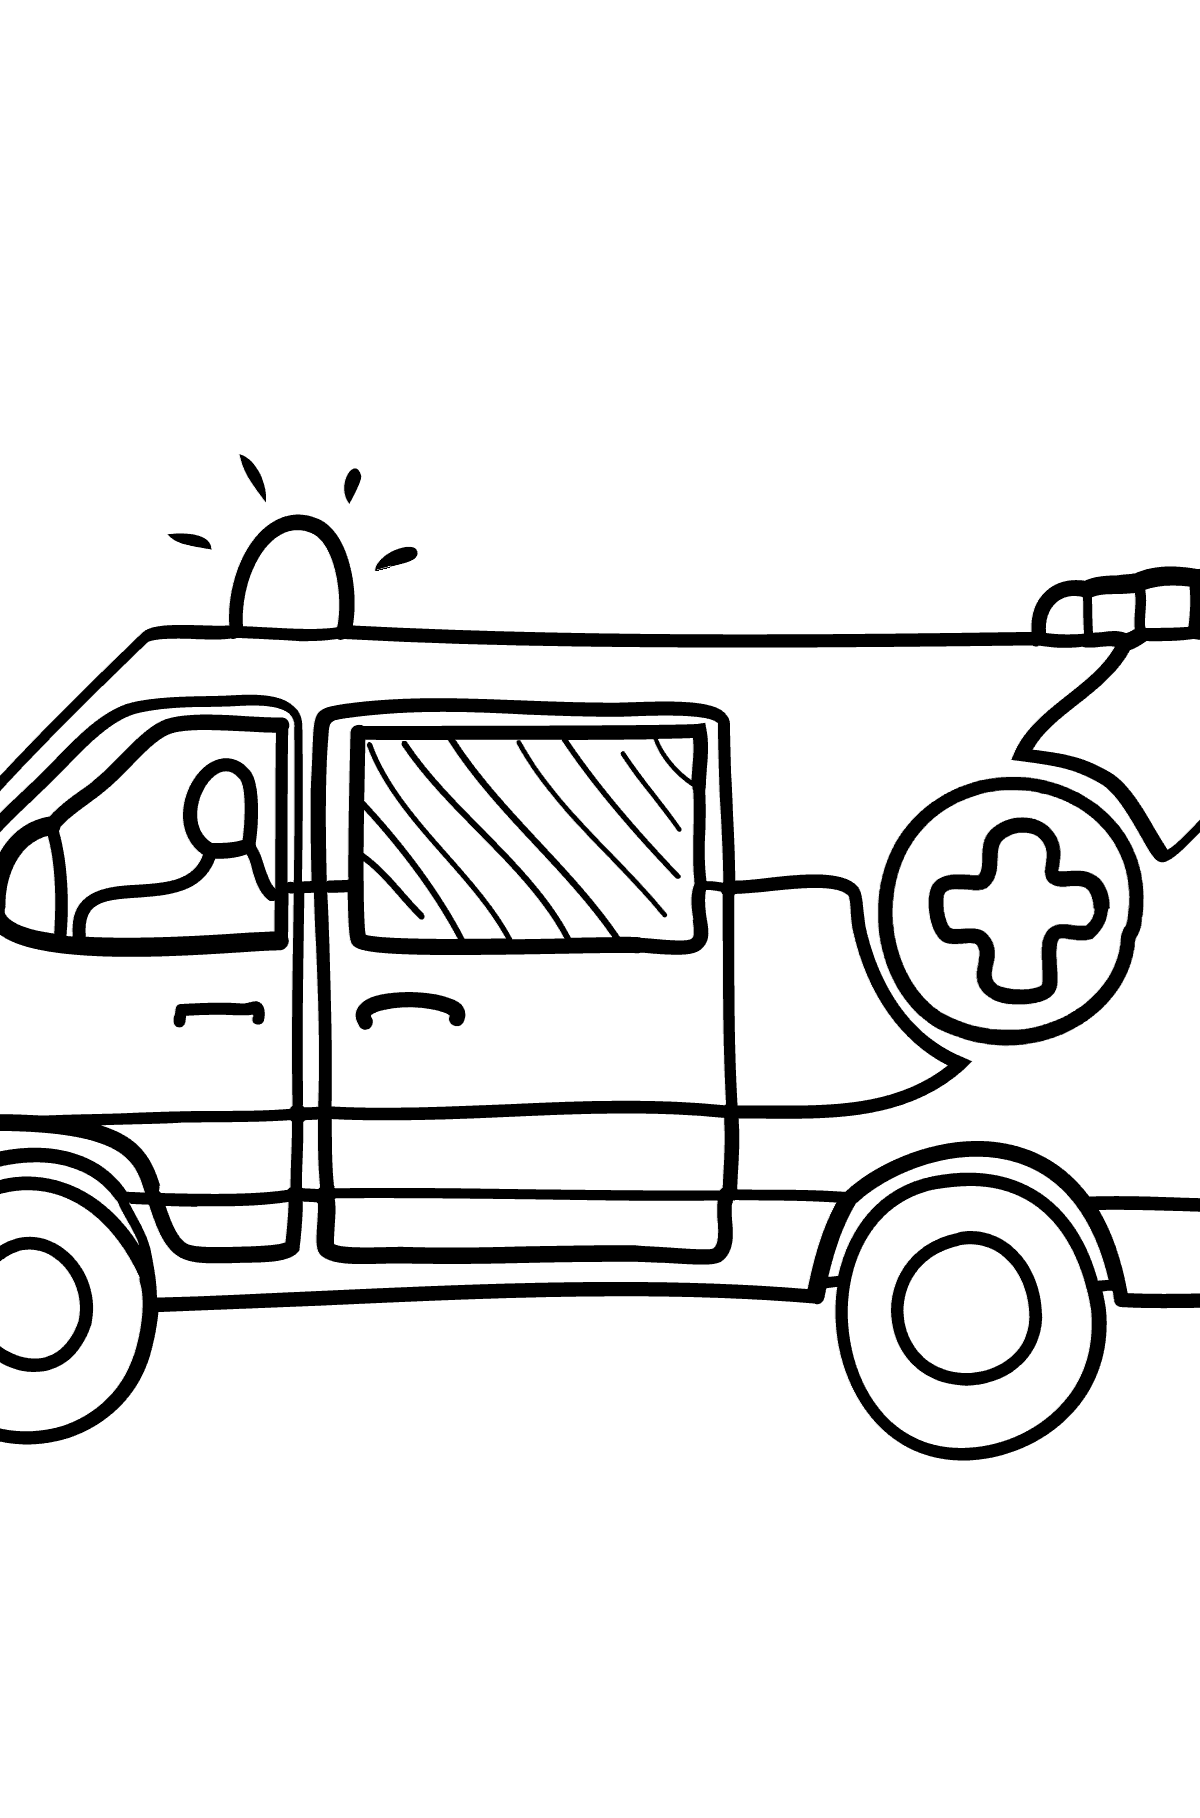 Kleurplaat Ambulance - kleurplaten voor kinderen